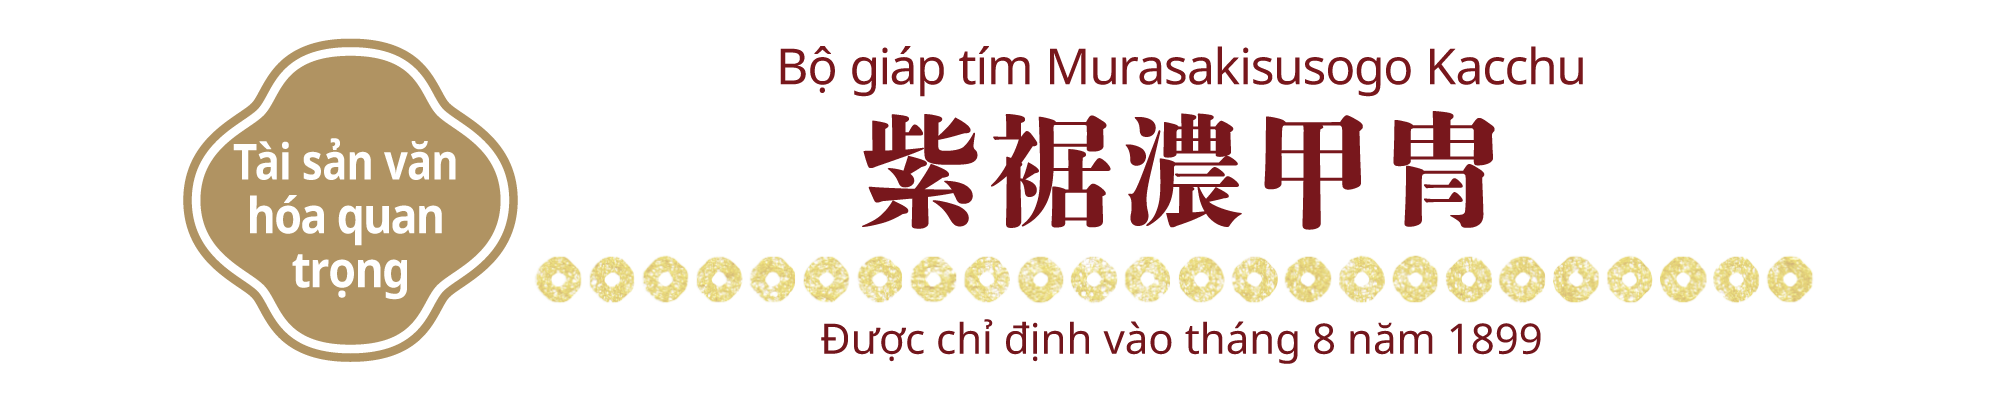 [Tài sản văn hóa quan trọng]Bộ giáp tím Murasakisusogo Kacchu, Được chỉ định vào tháng 8 năm 1899